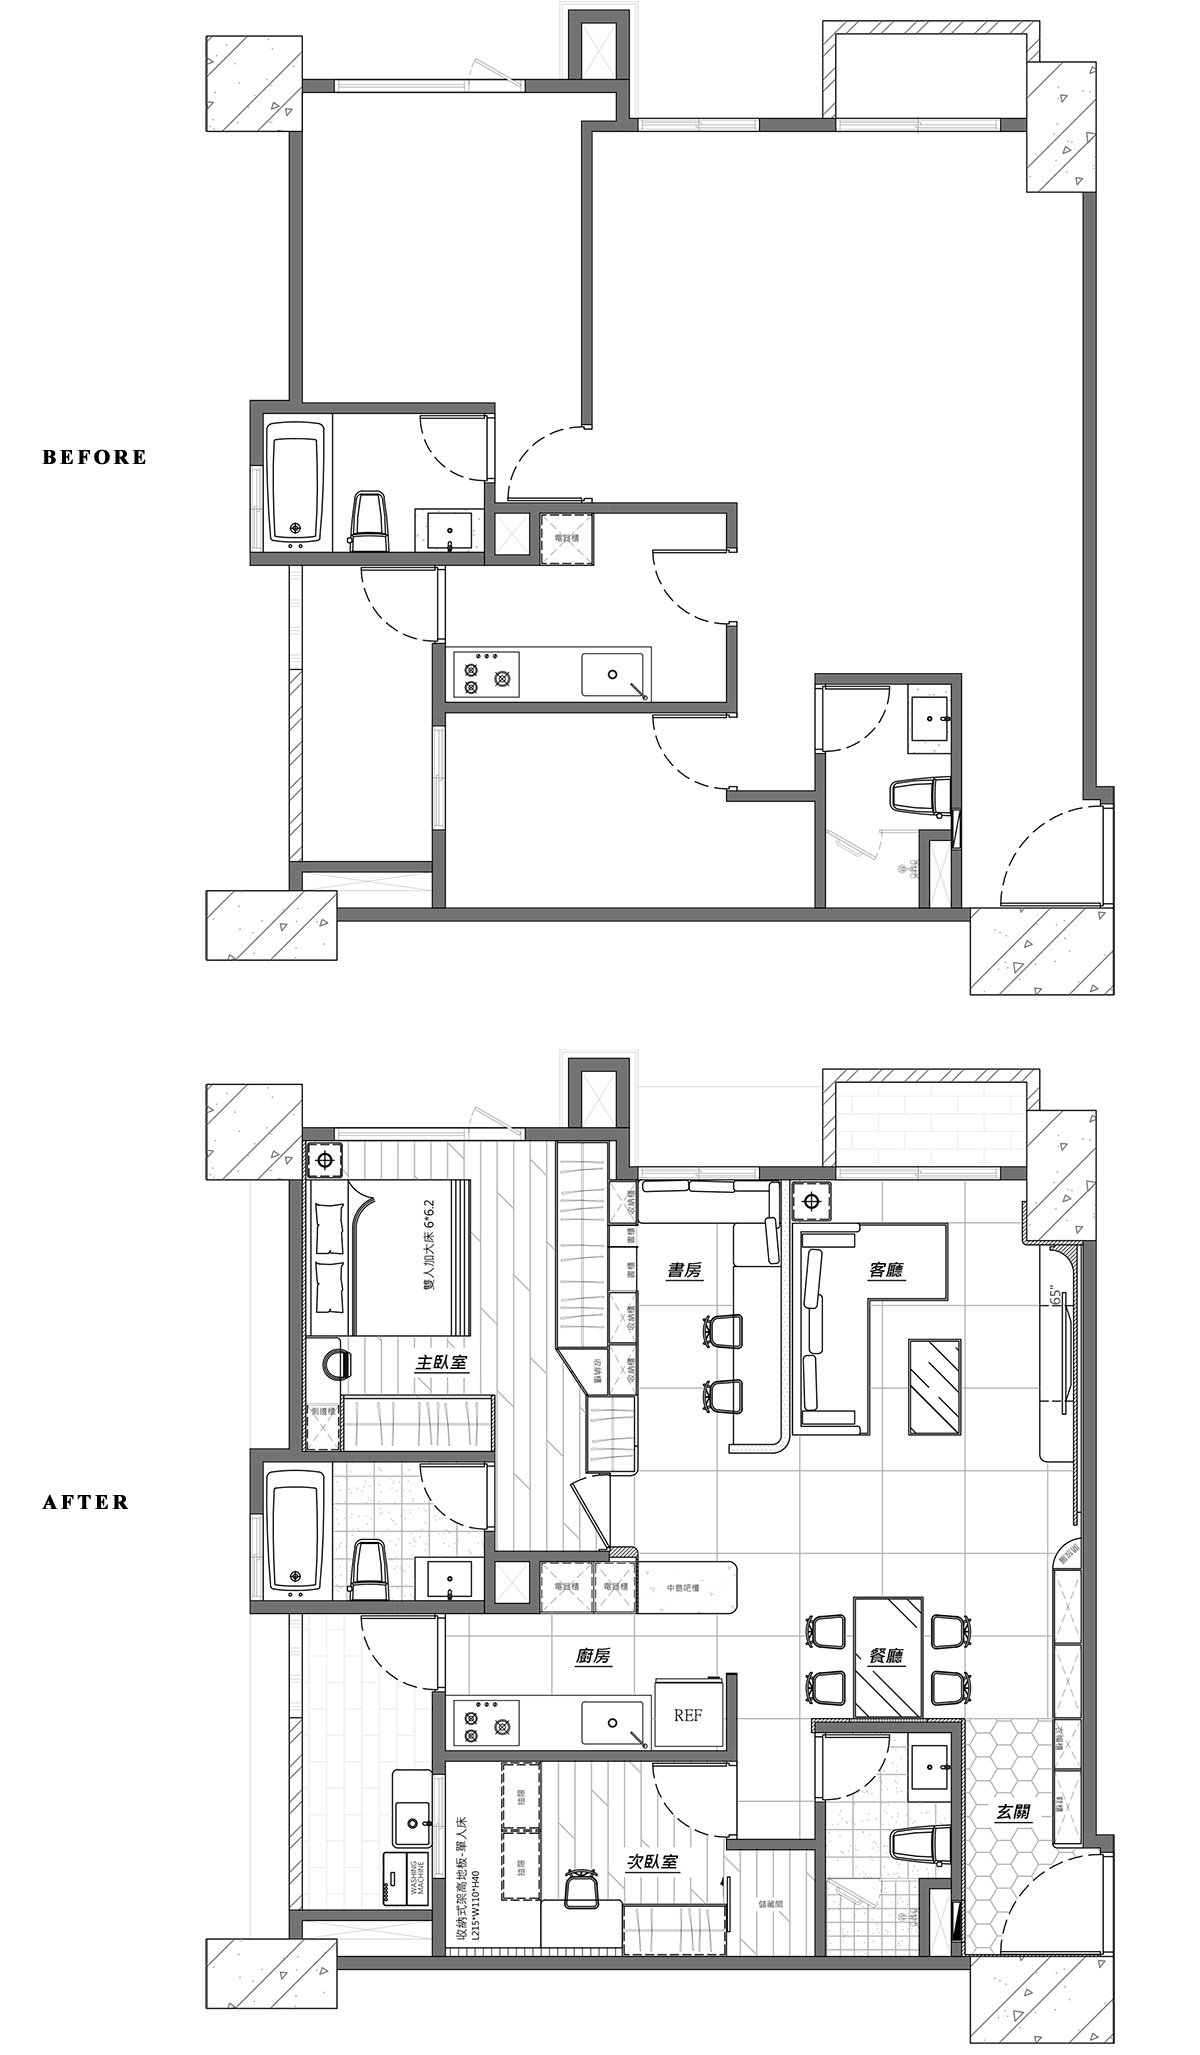 住宅設計,公寓設計,小戶型設計,60㎡公寓設計,公寓設計案例,公寓設計方案,UC.enter,新北